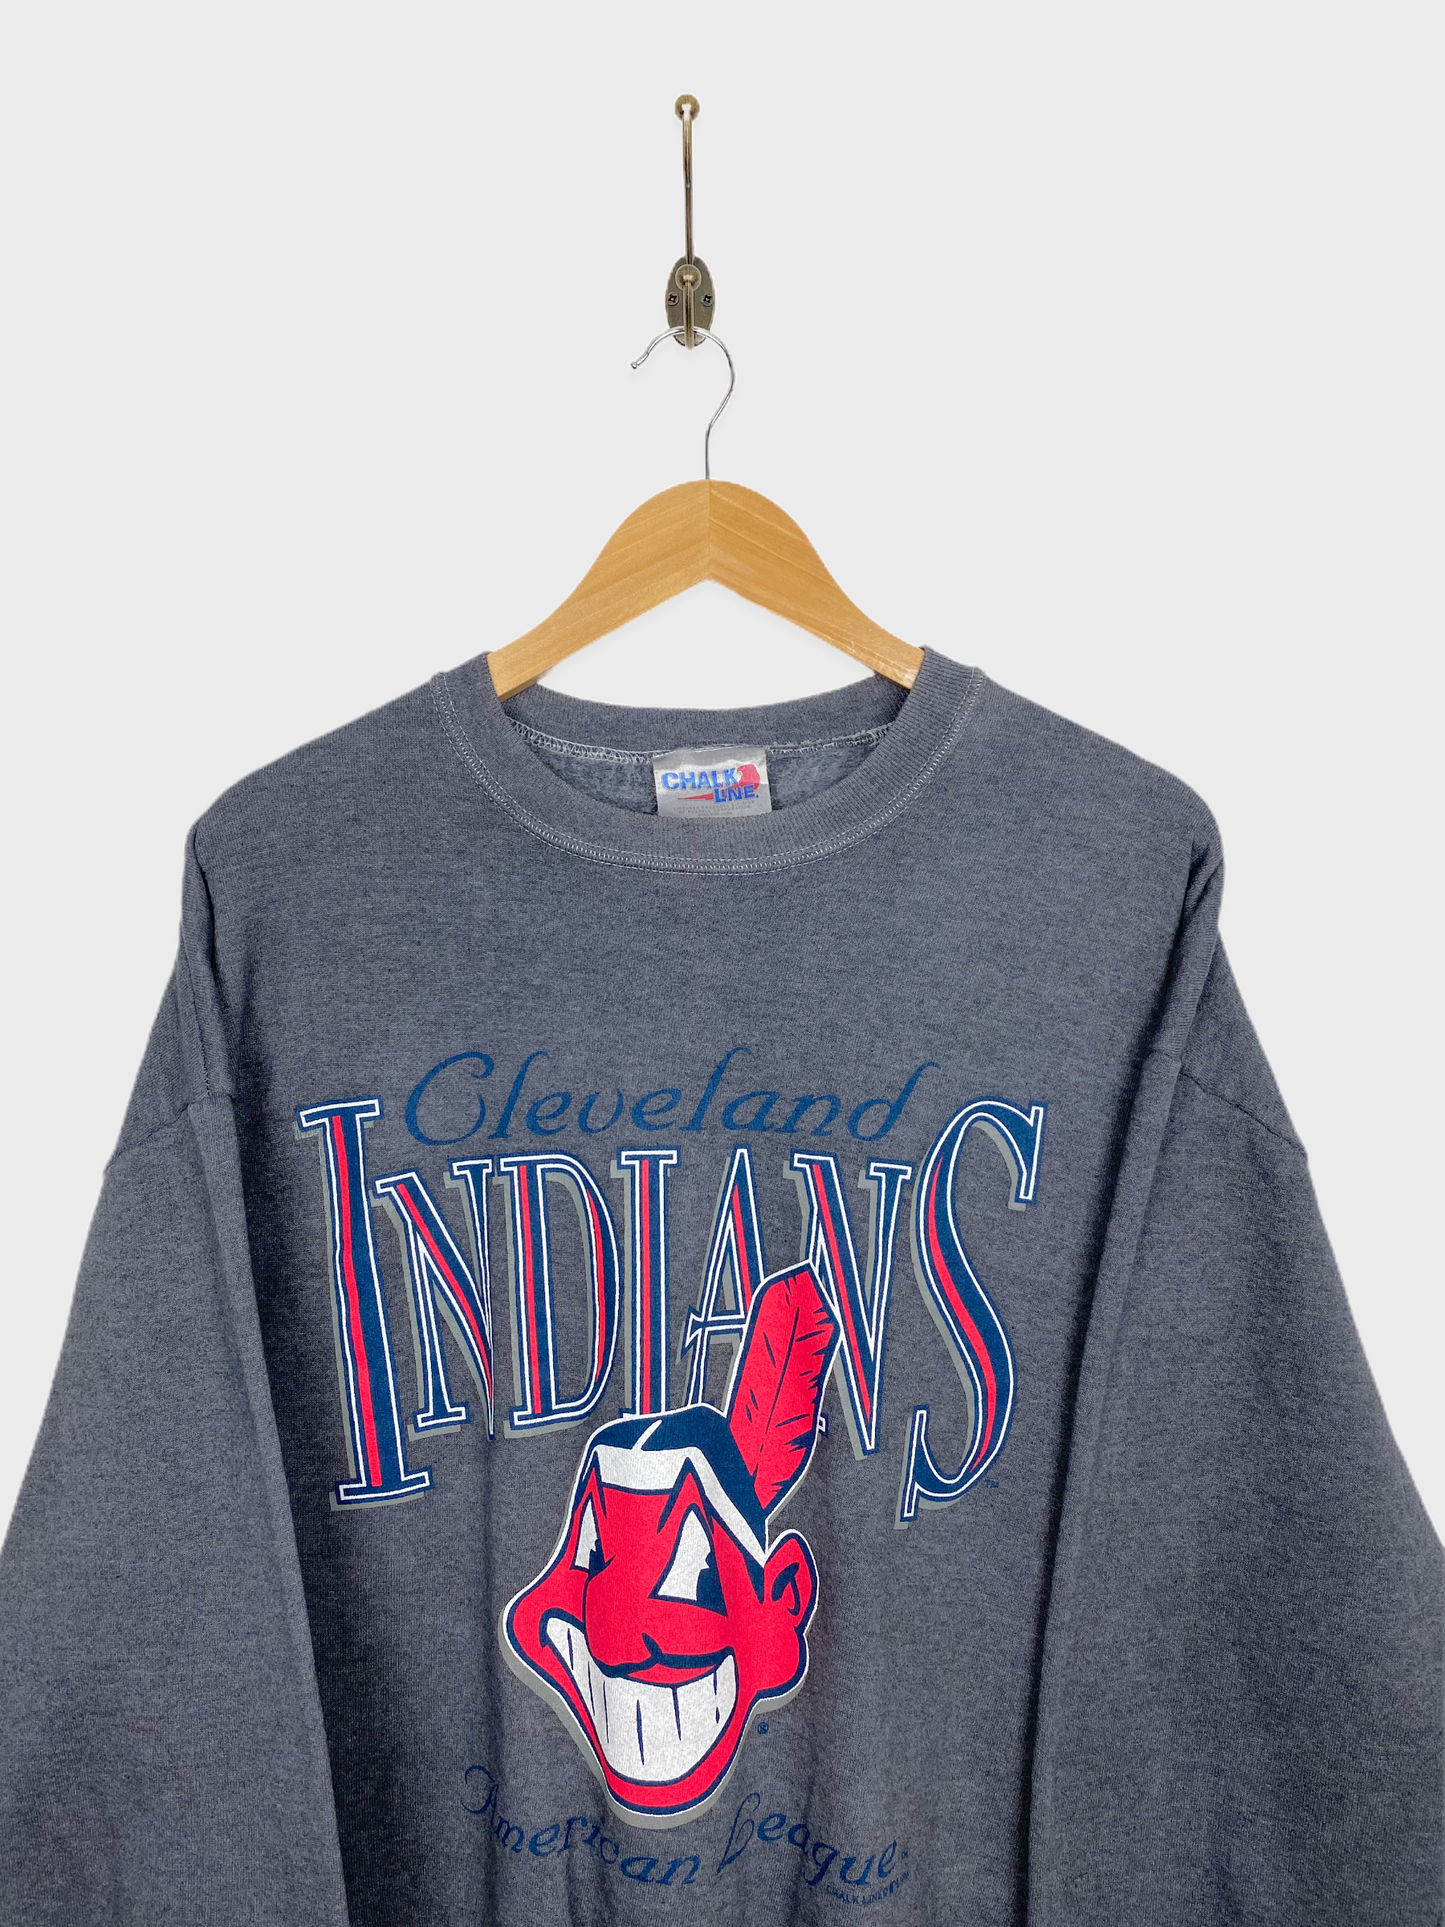 1996 Cleveland Indians MLB Vintage Sweatshirt Size 10-12